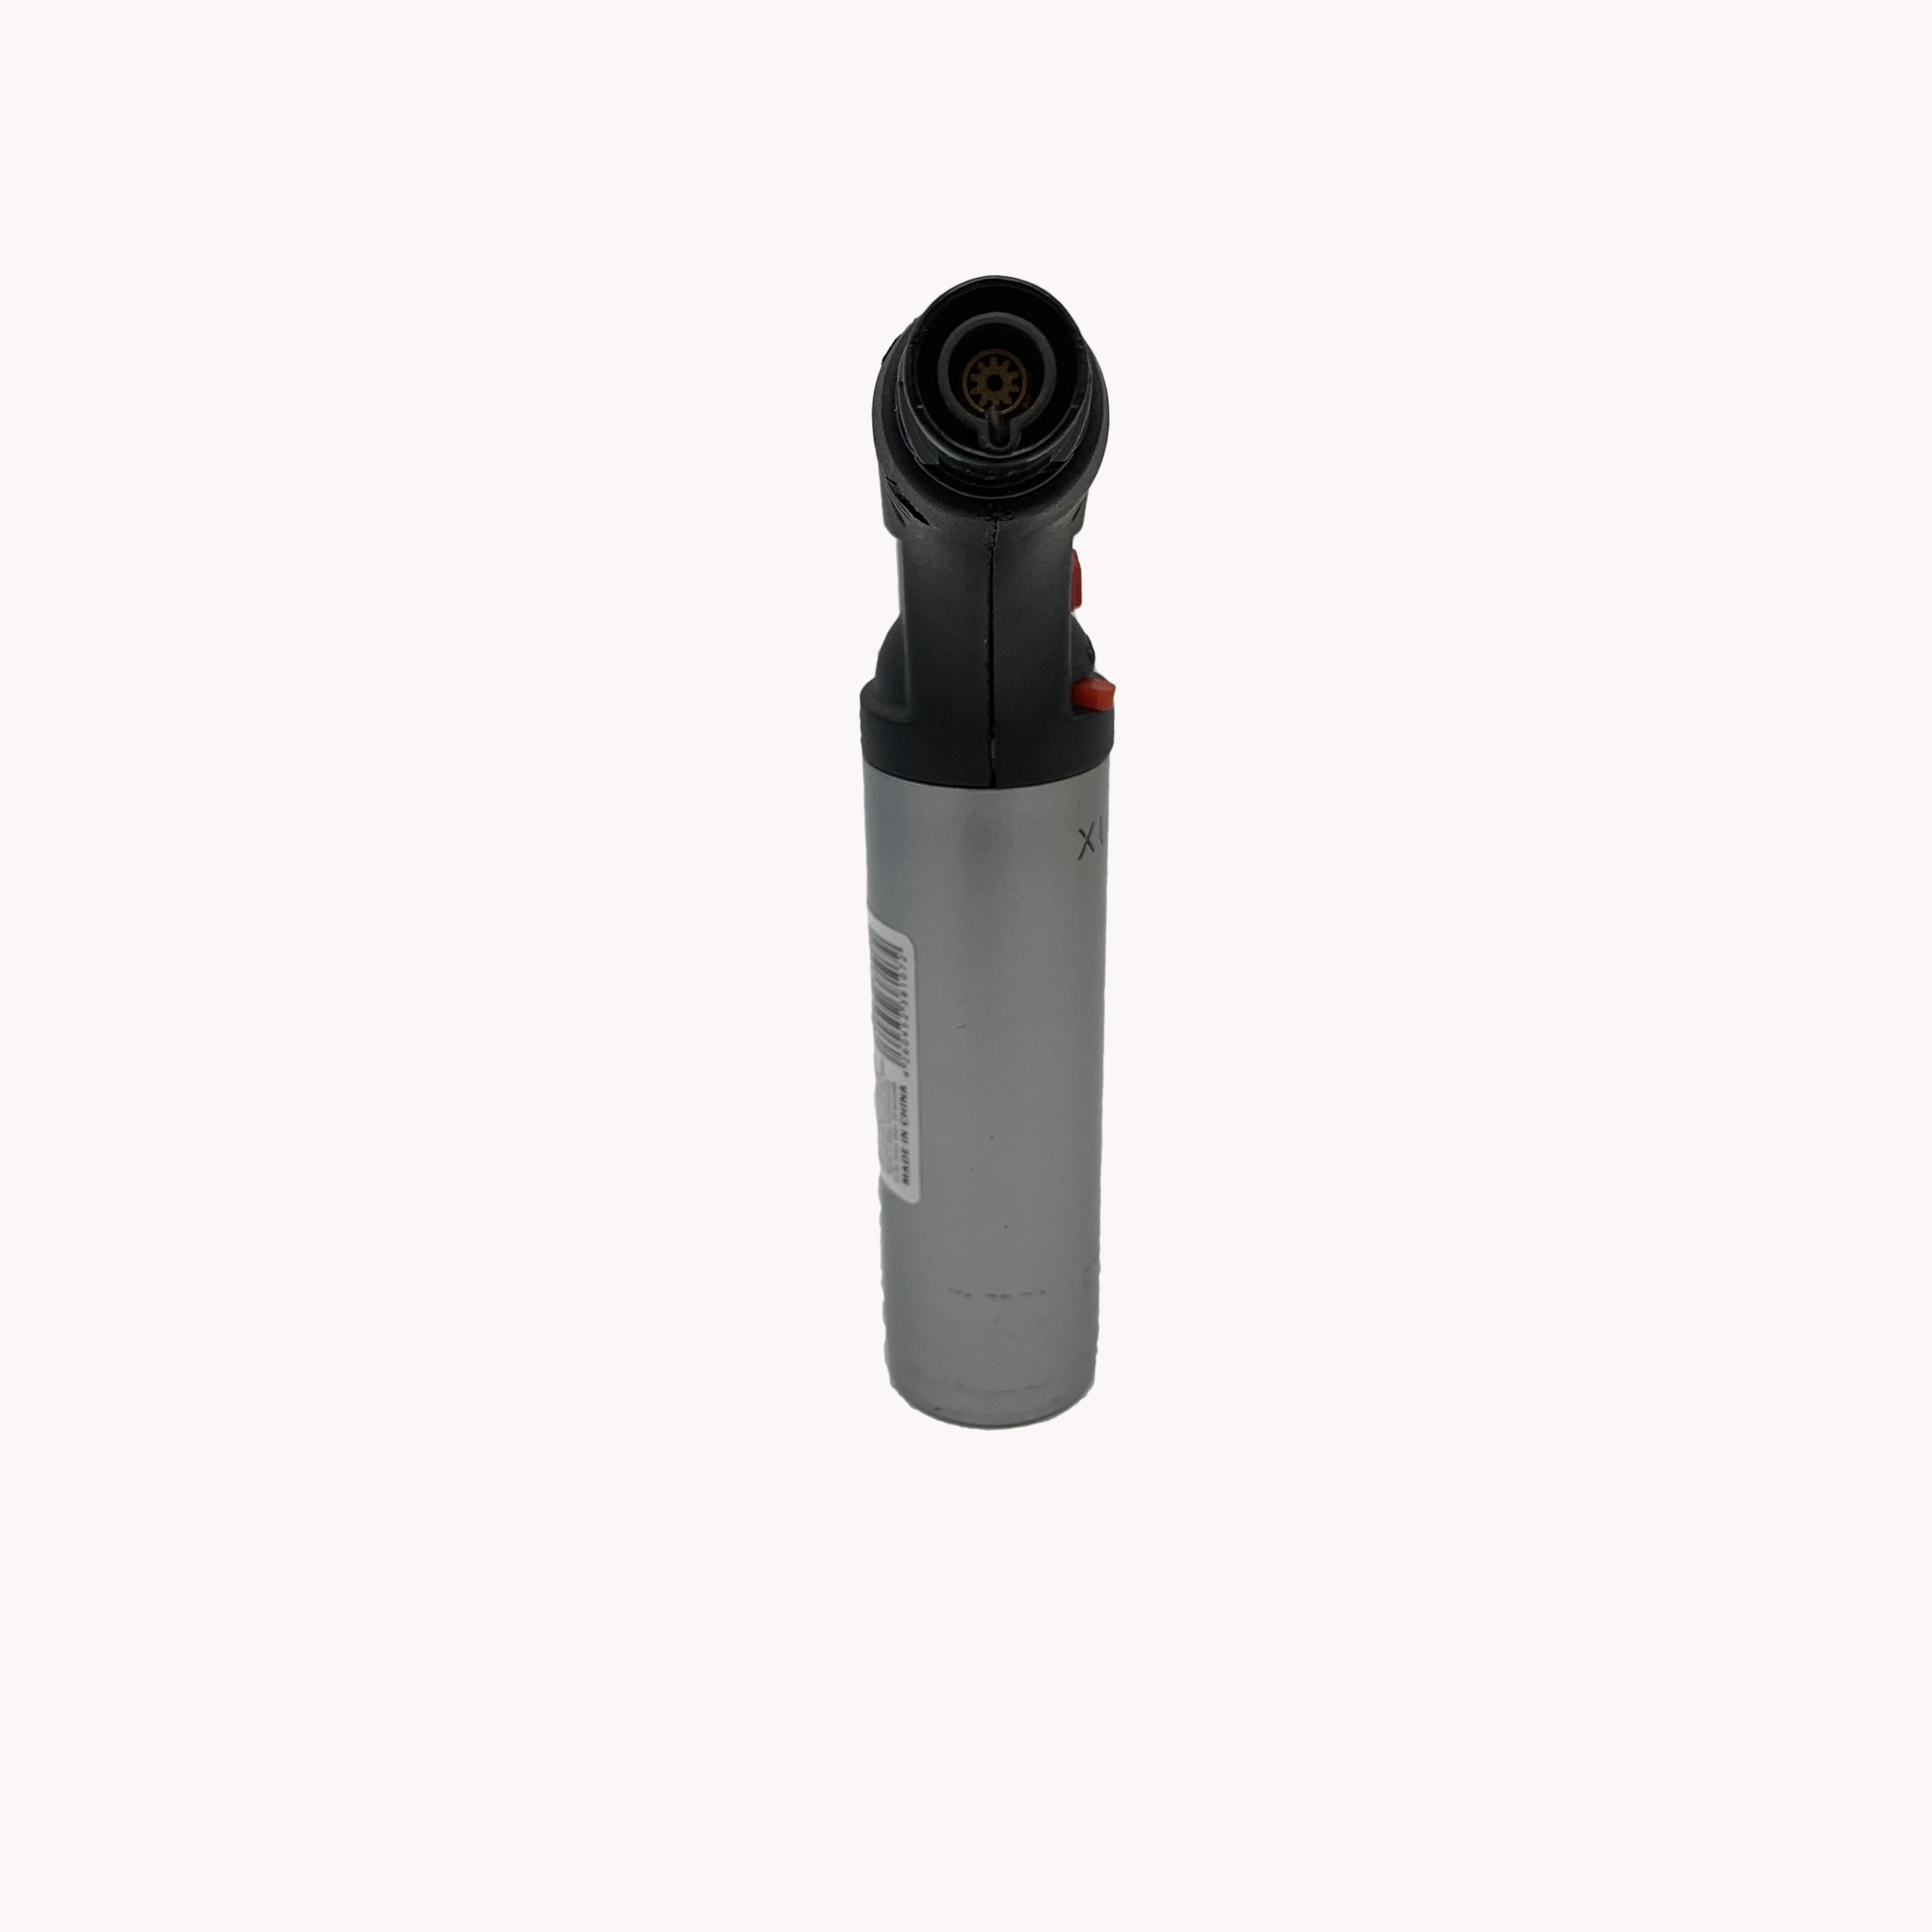 Small Portable Fenix tabaco de cigarros de alta qualidade para fumadores Windproof Torch-Lighter Isqueiro Jet Torch Butane